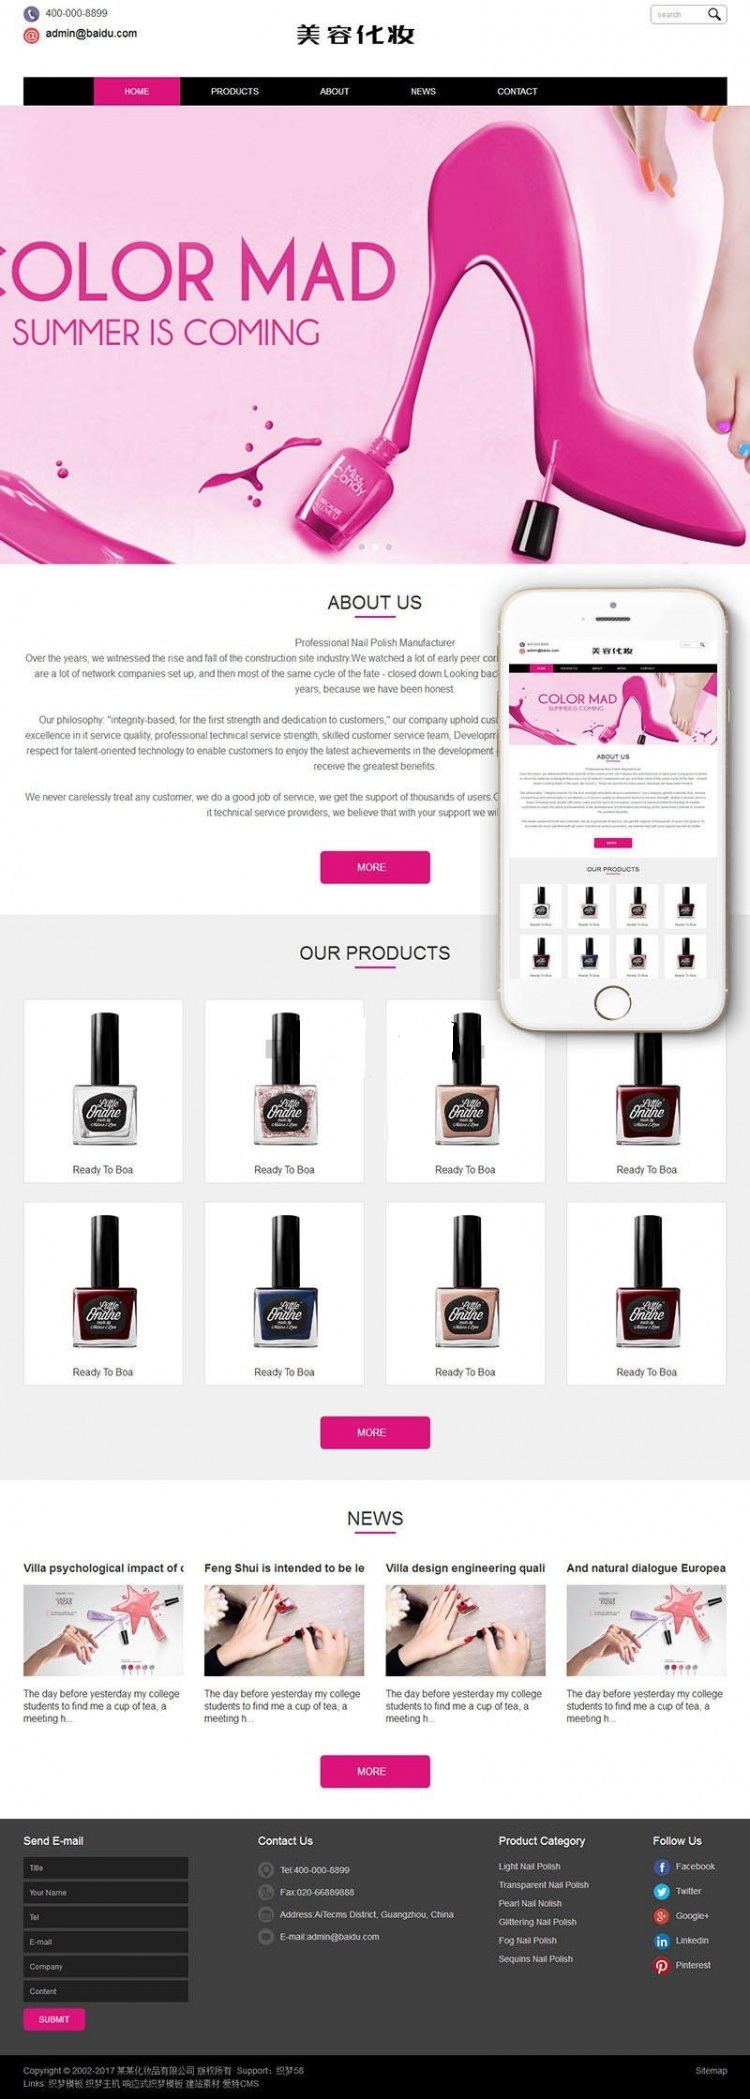 响应式织梦模板化妆美容产品营销型企业网站模板 自适应手机端